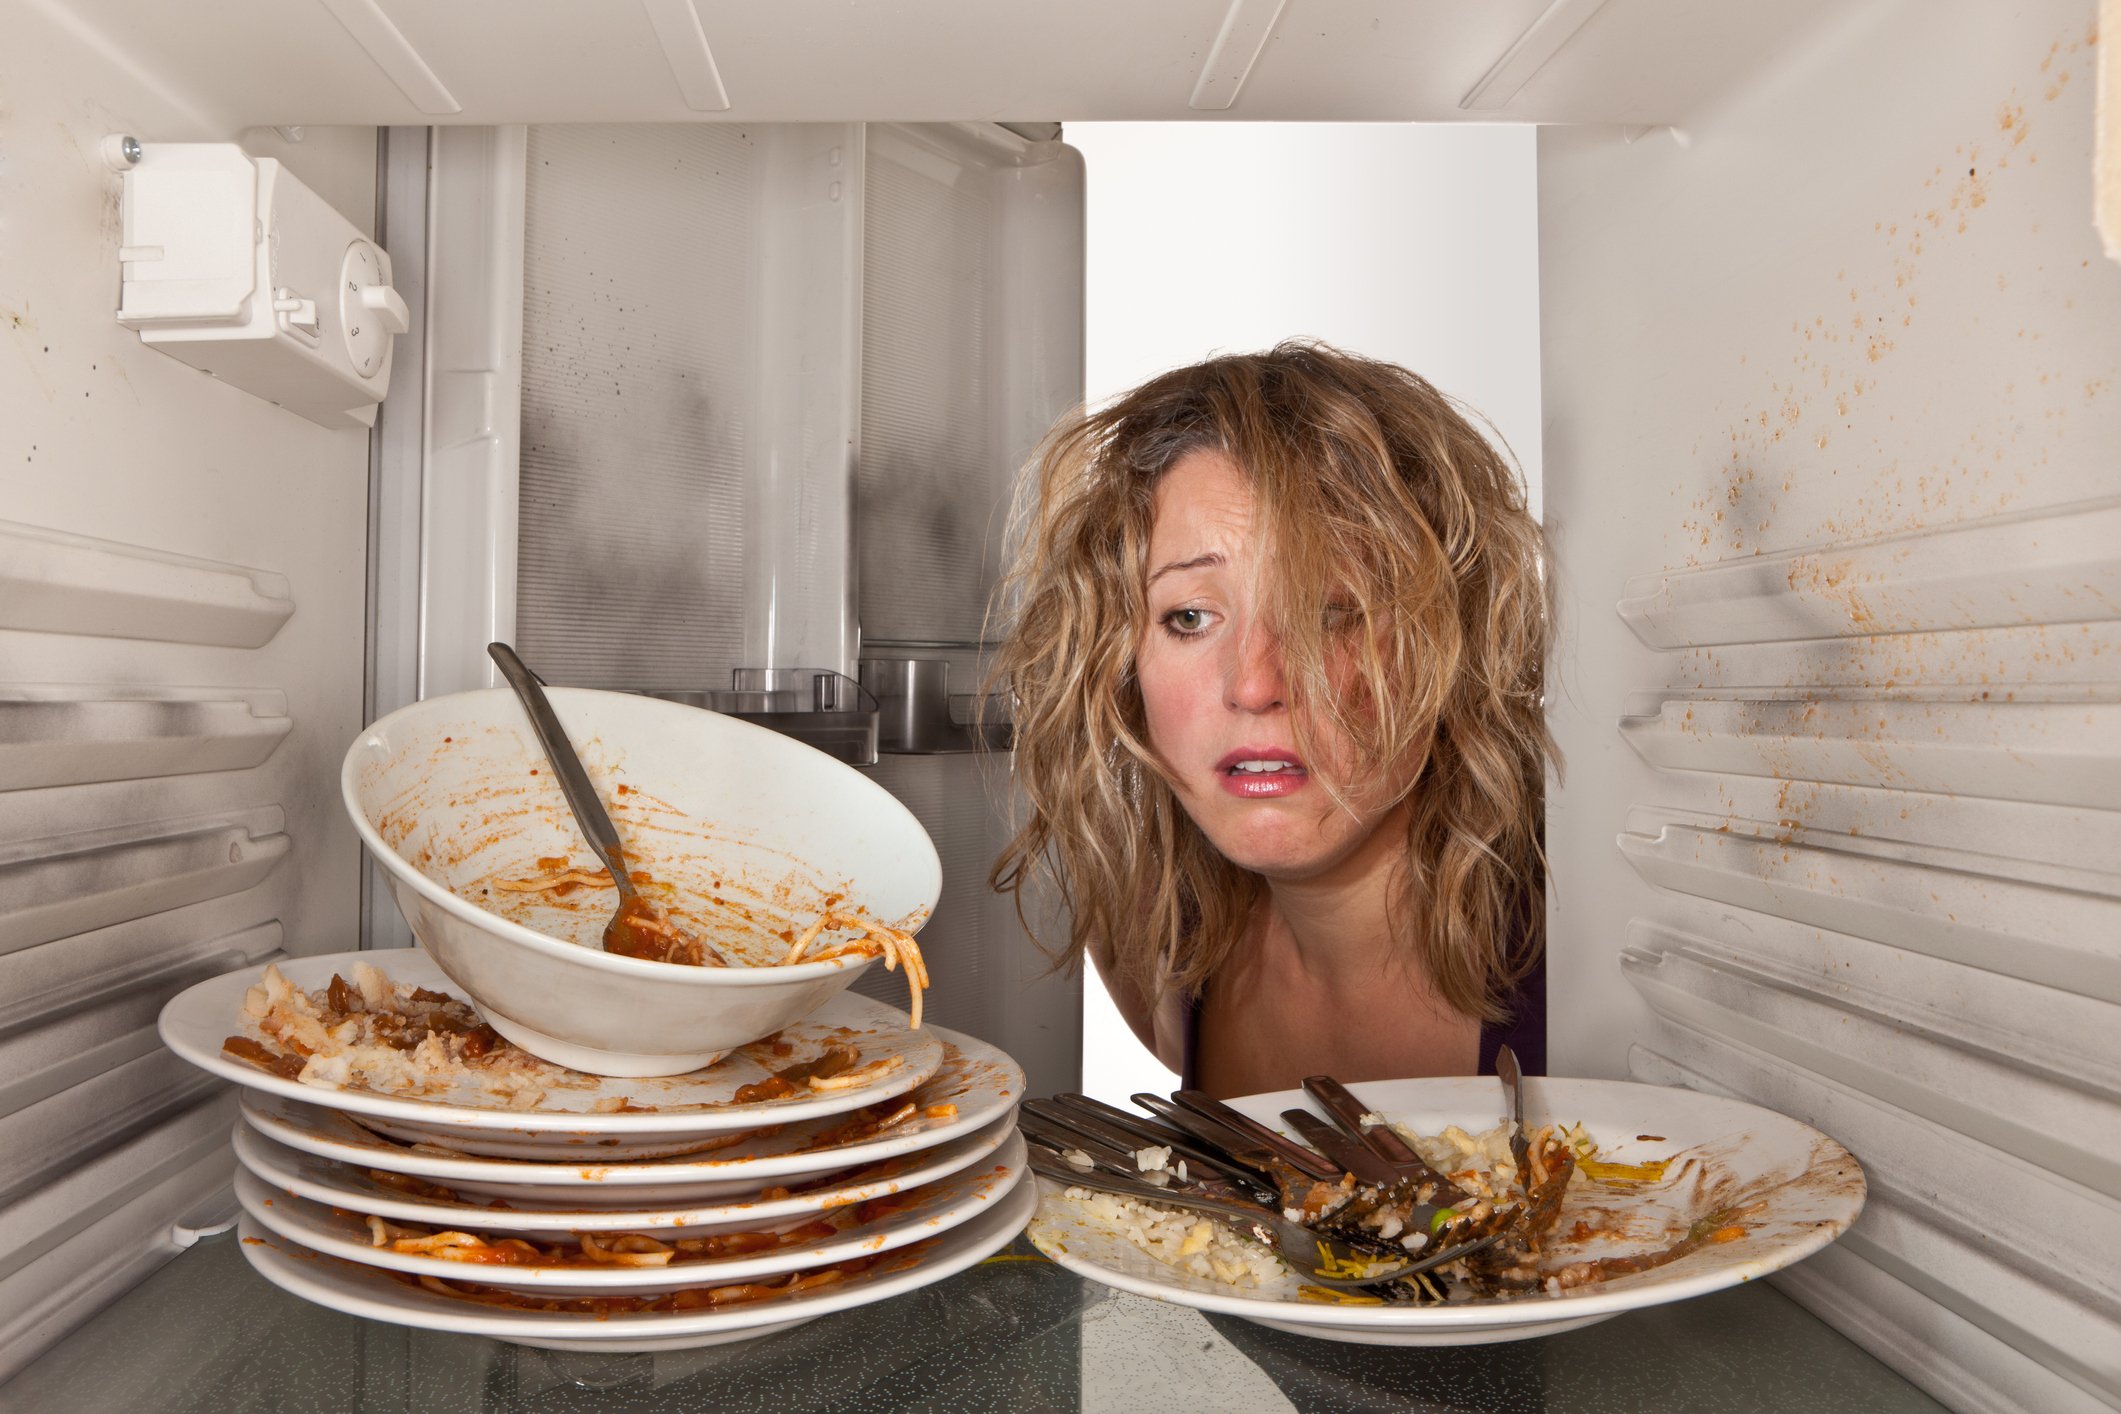 Frau findet schmutziges Geschirr im Kühlschrank I Quelle: Getty Images